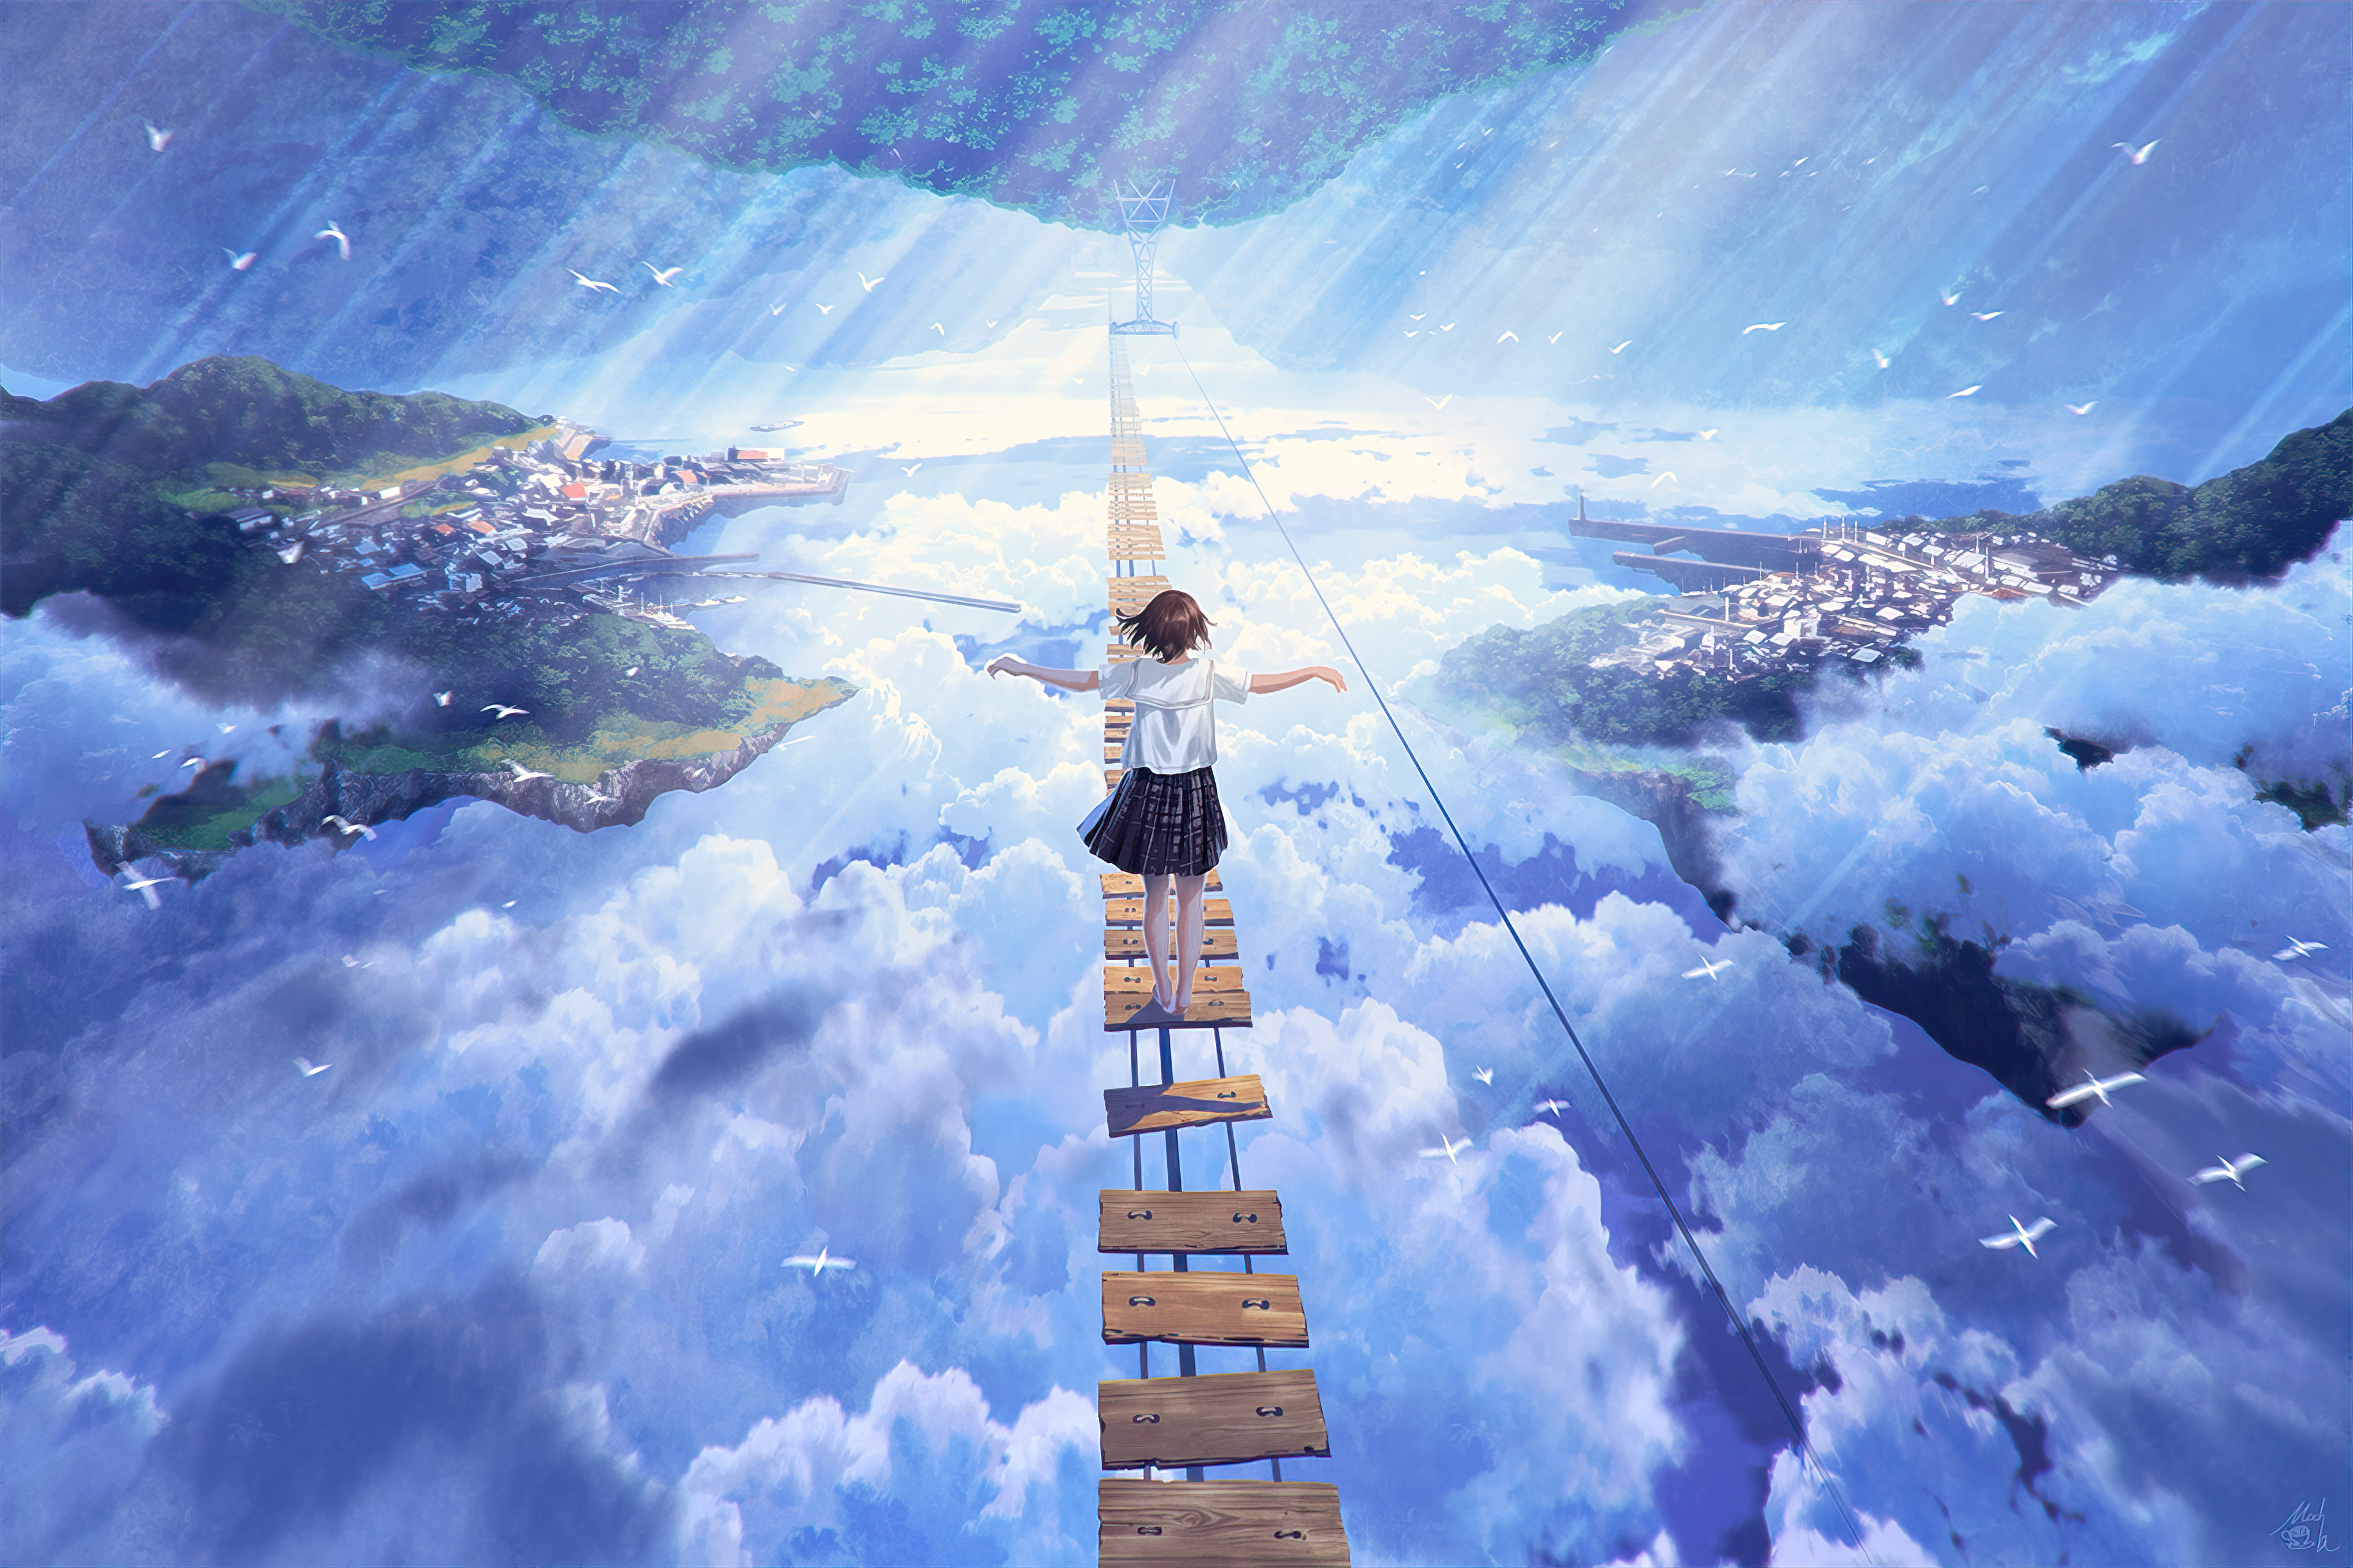 Anime Girl Walking On Dream Bridge 4k Hd Anime 4k Wallpapers Images